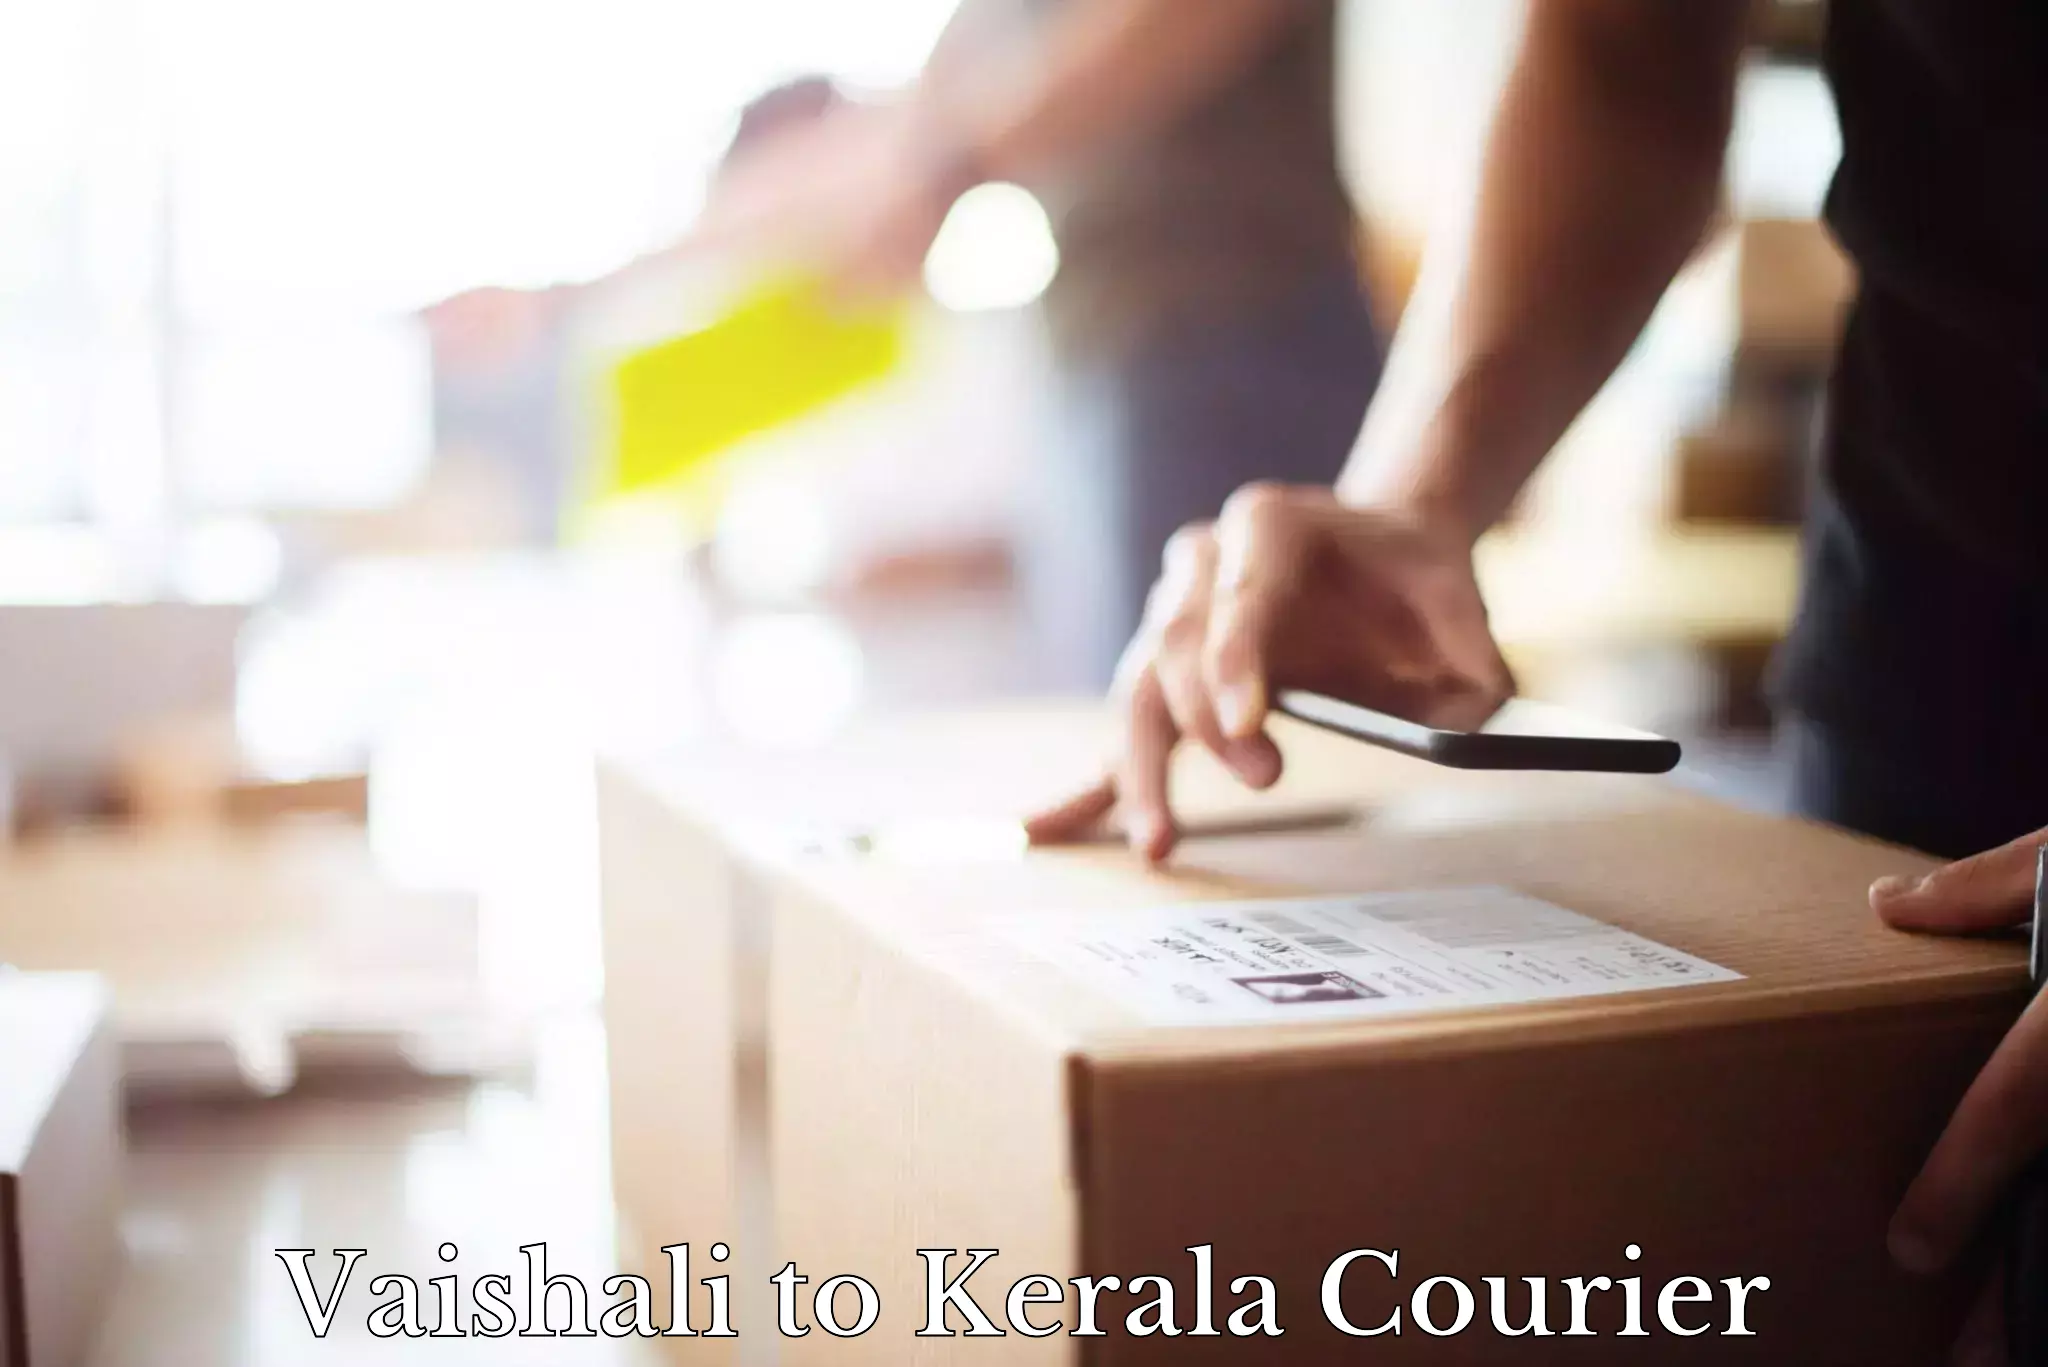 Premium delivery services Vaishali to Kattappana